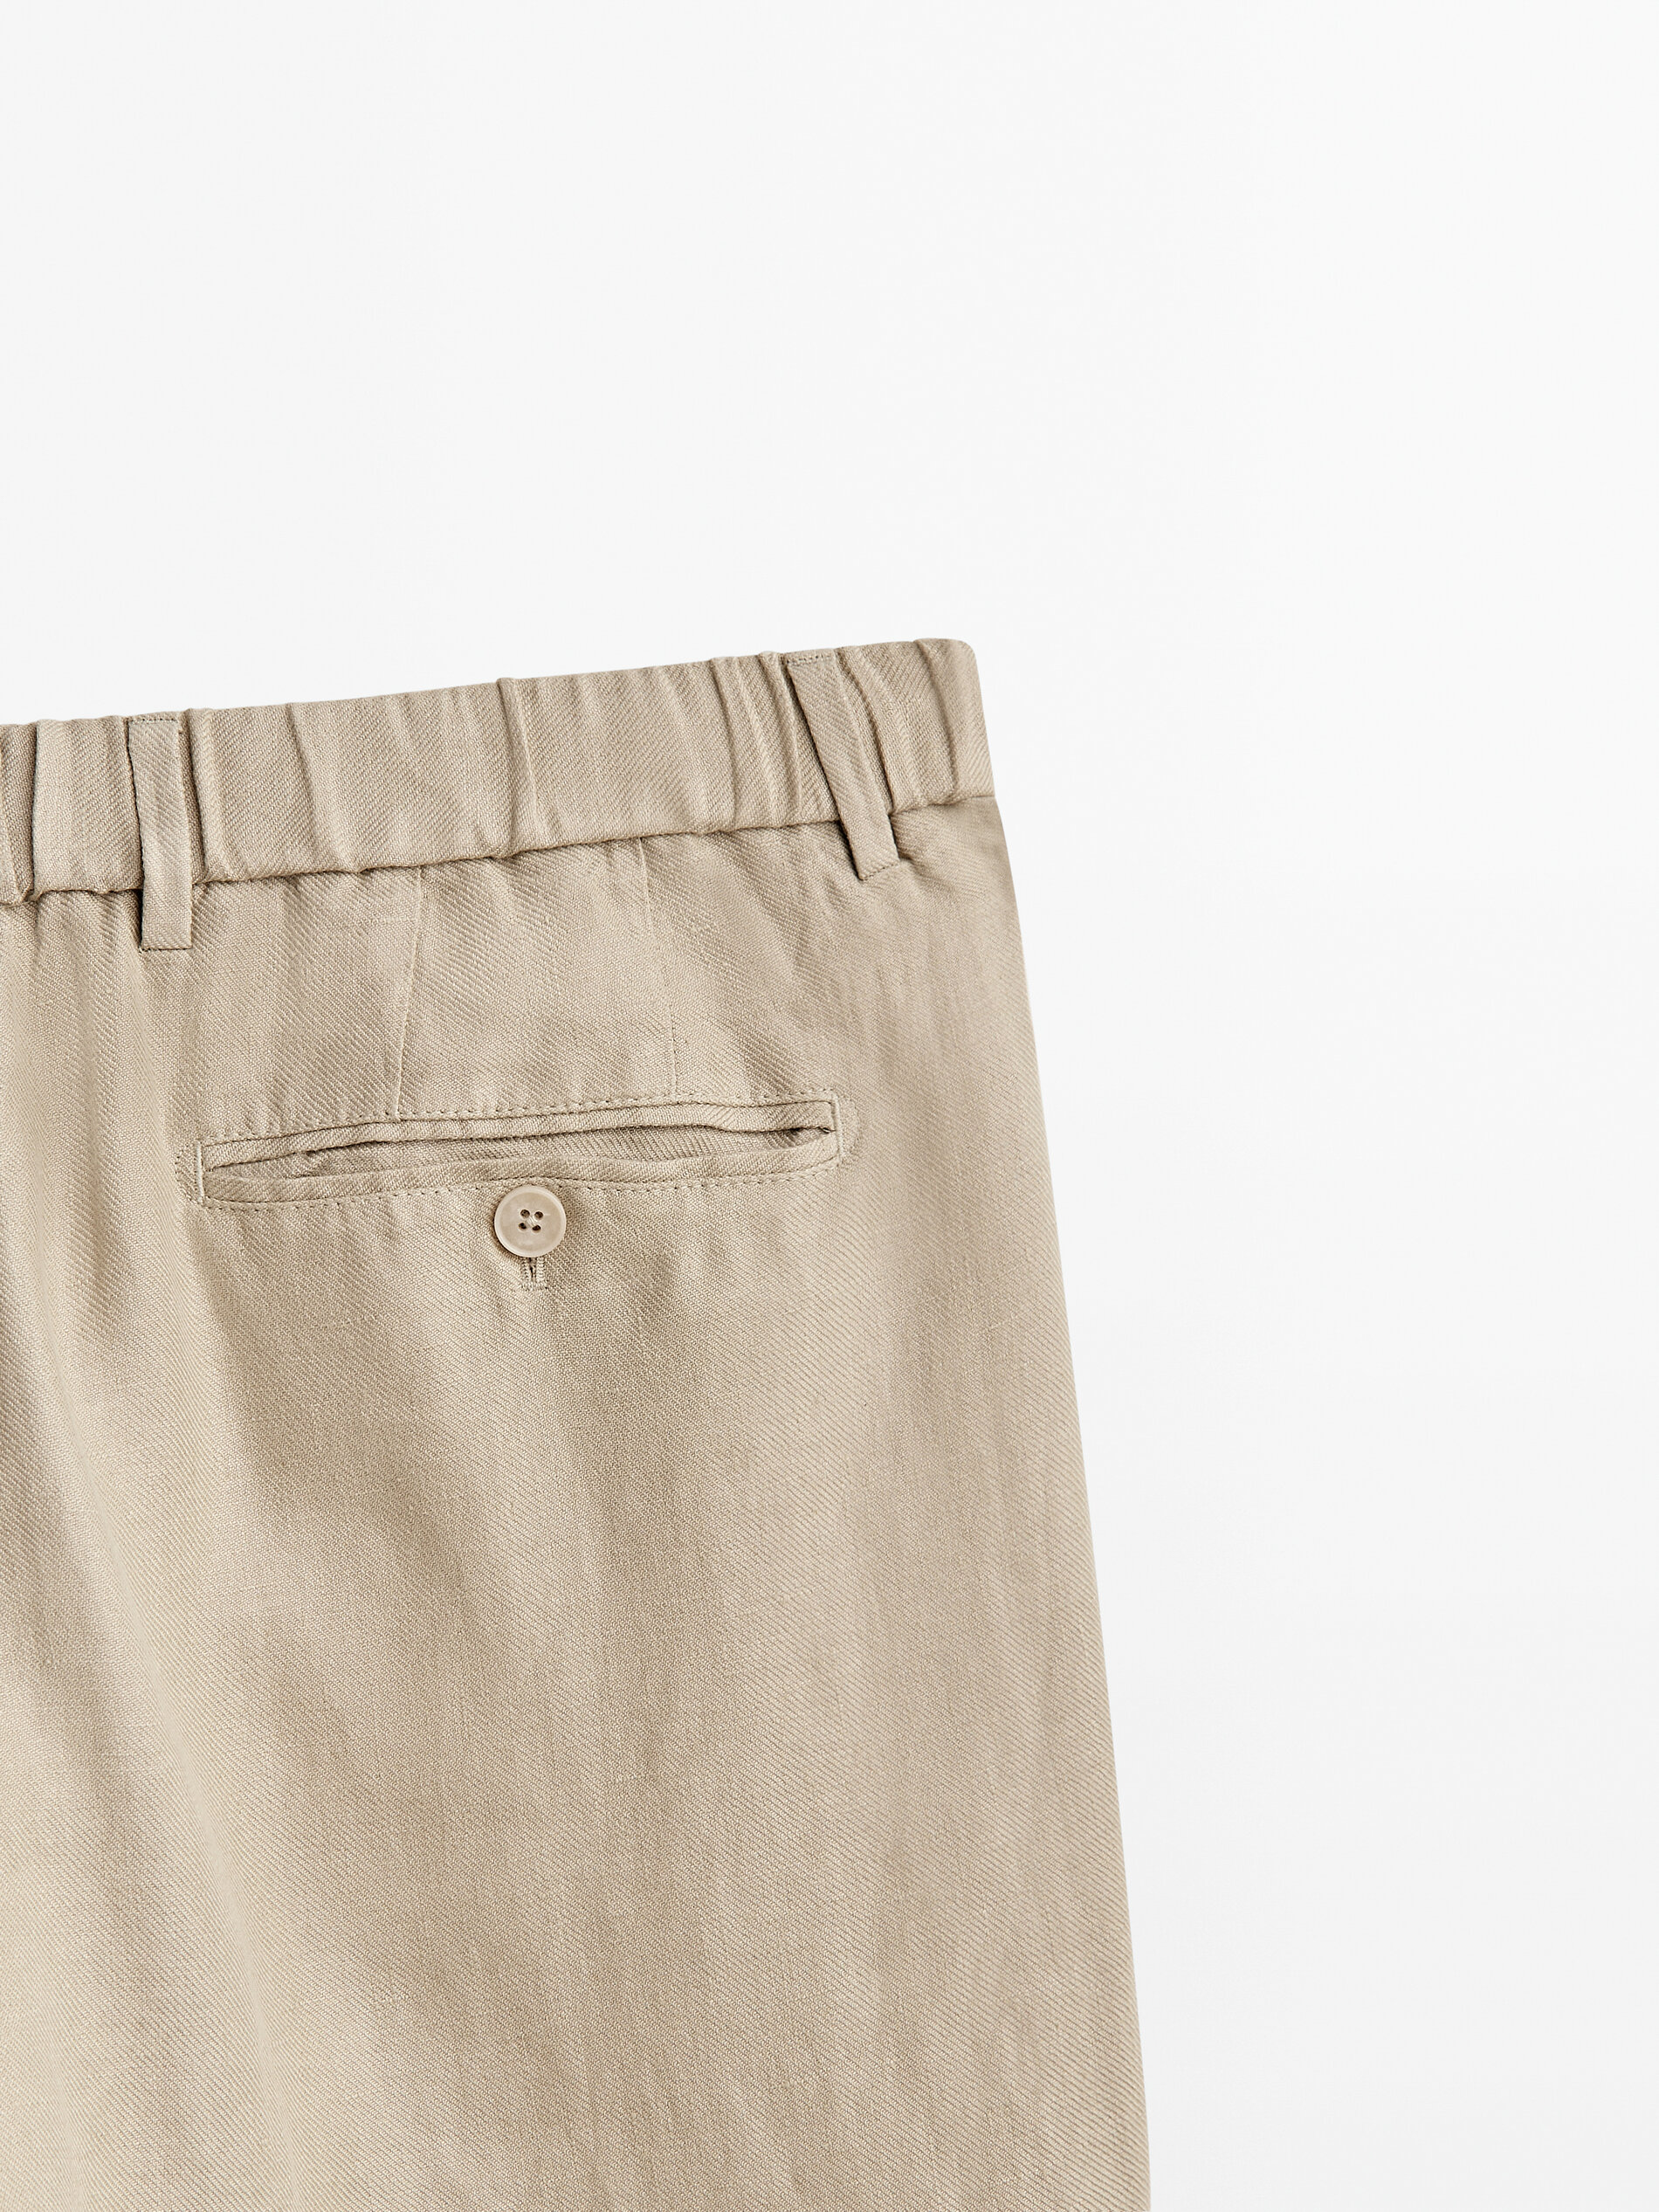 Pantalón 100% lino pinzas